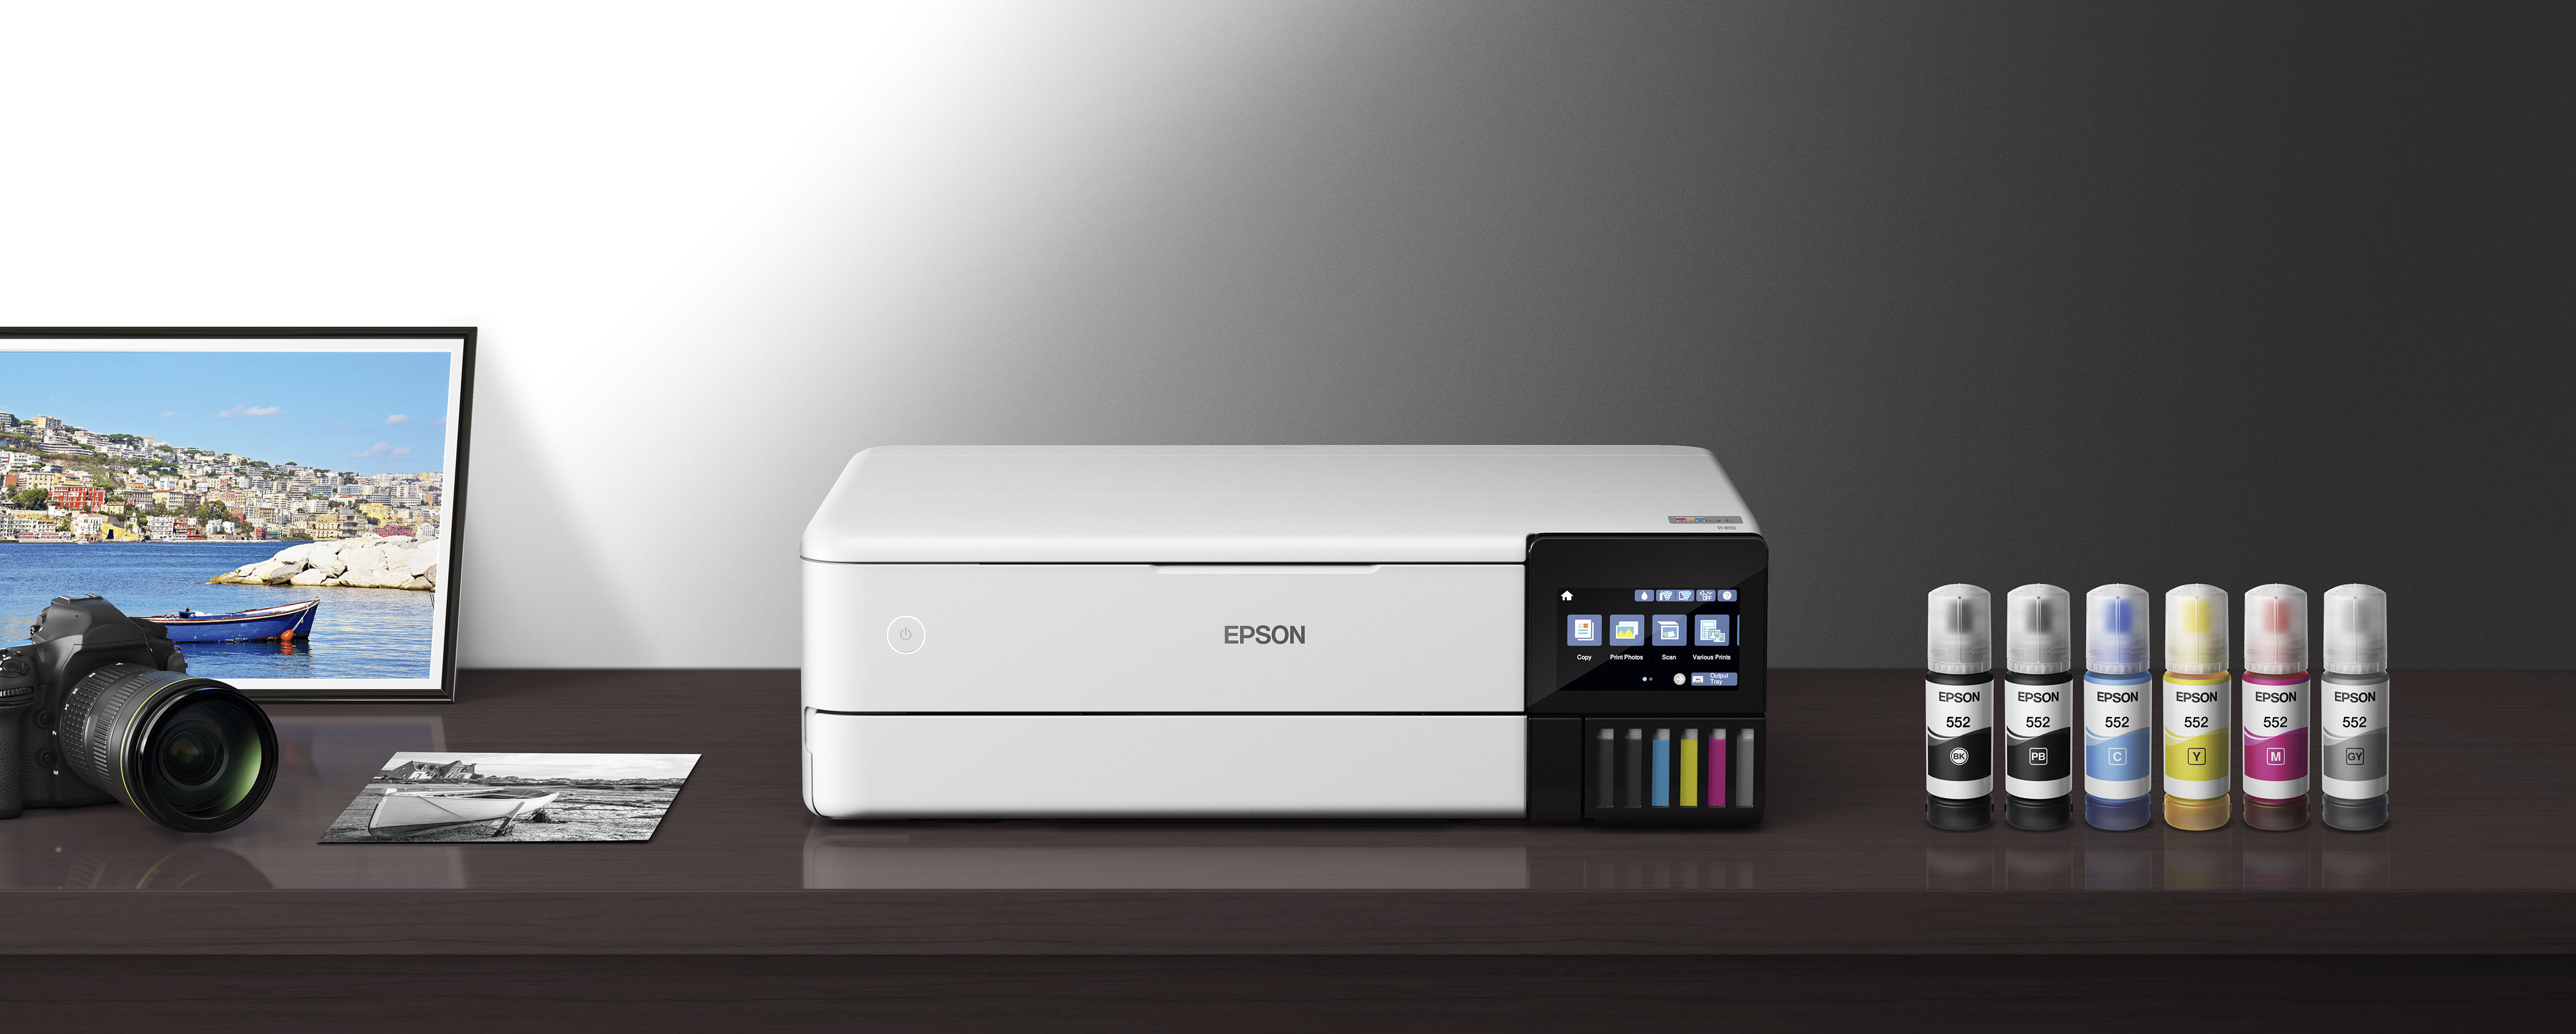 Epson Expression Premium ET8550 Eco Tank A3 Printer/Scanner - Free